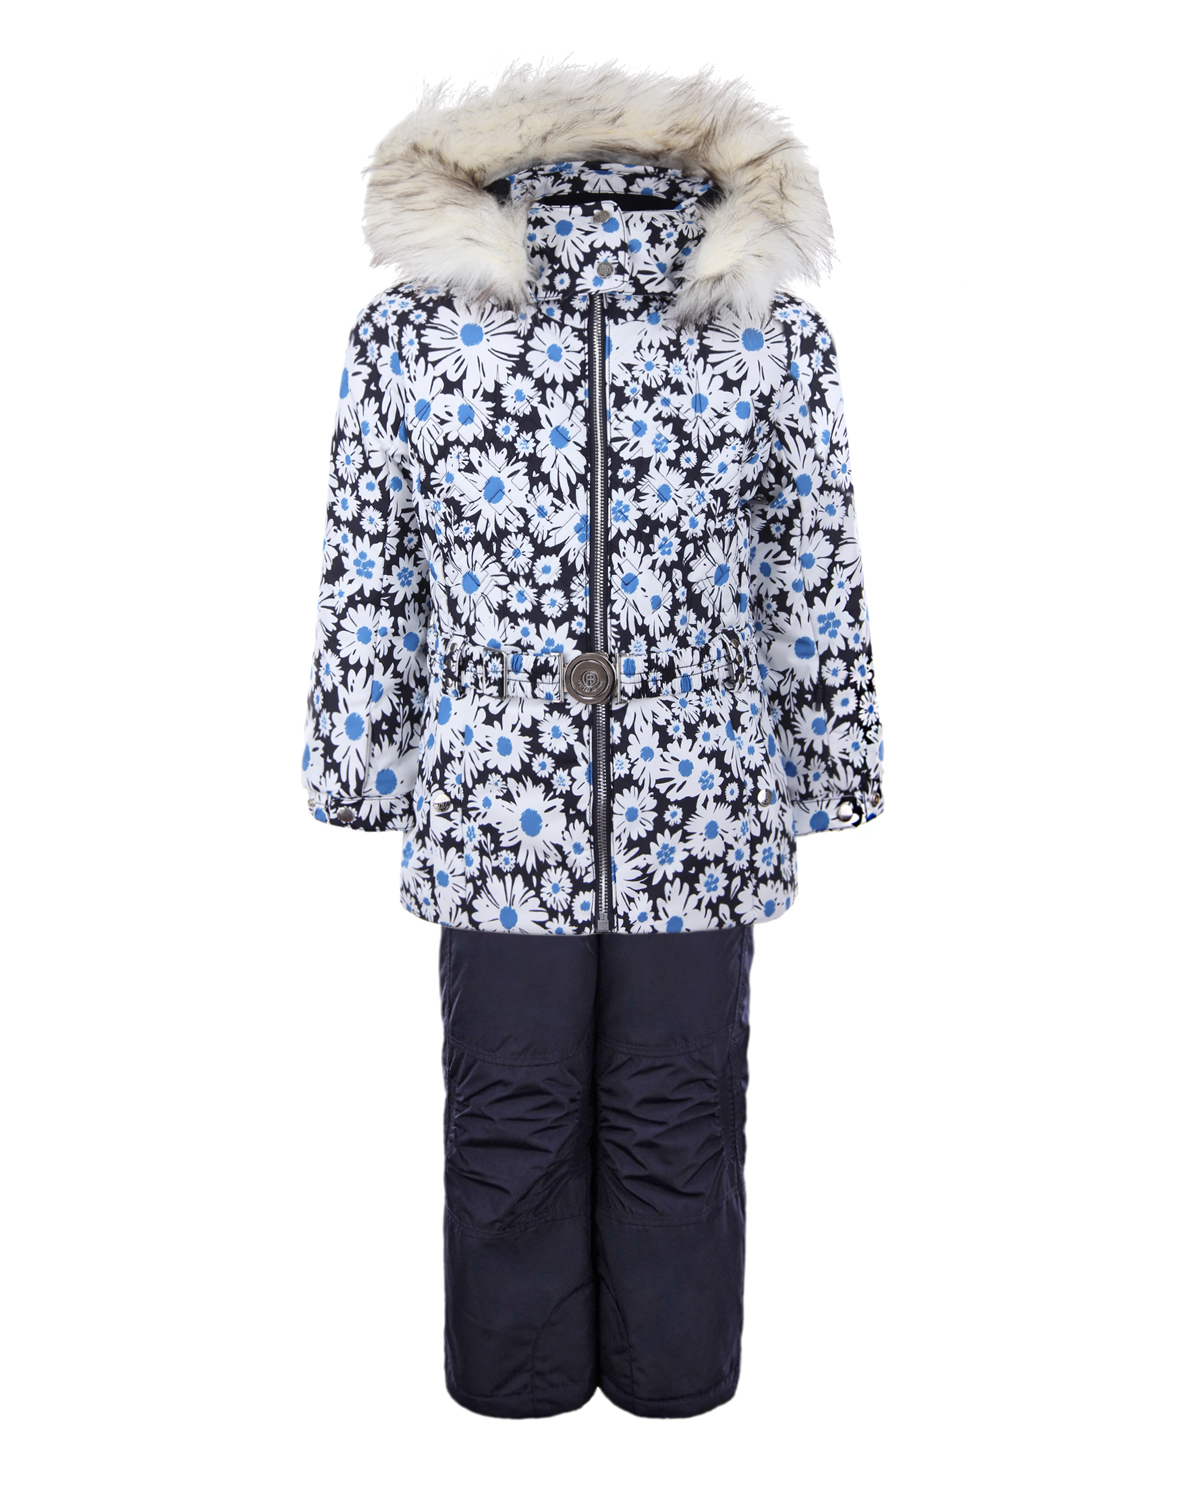 Зимний комплект из куртки и полукомбинезона для девочек Poivre Blanc детский, размер 104, цвет нет цвета